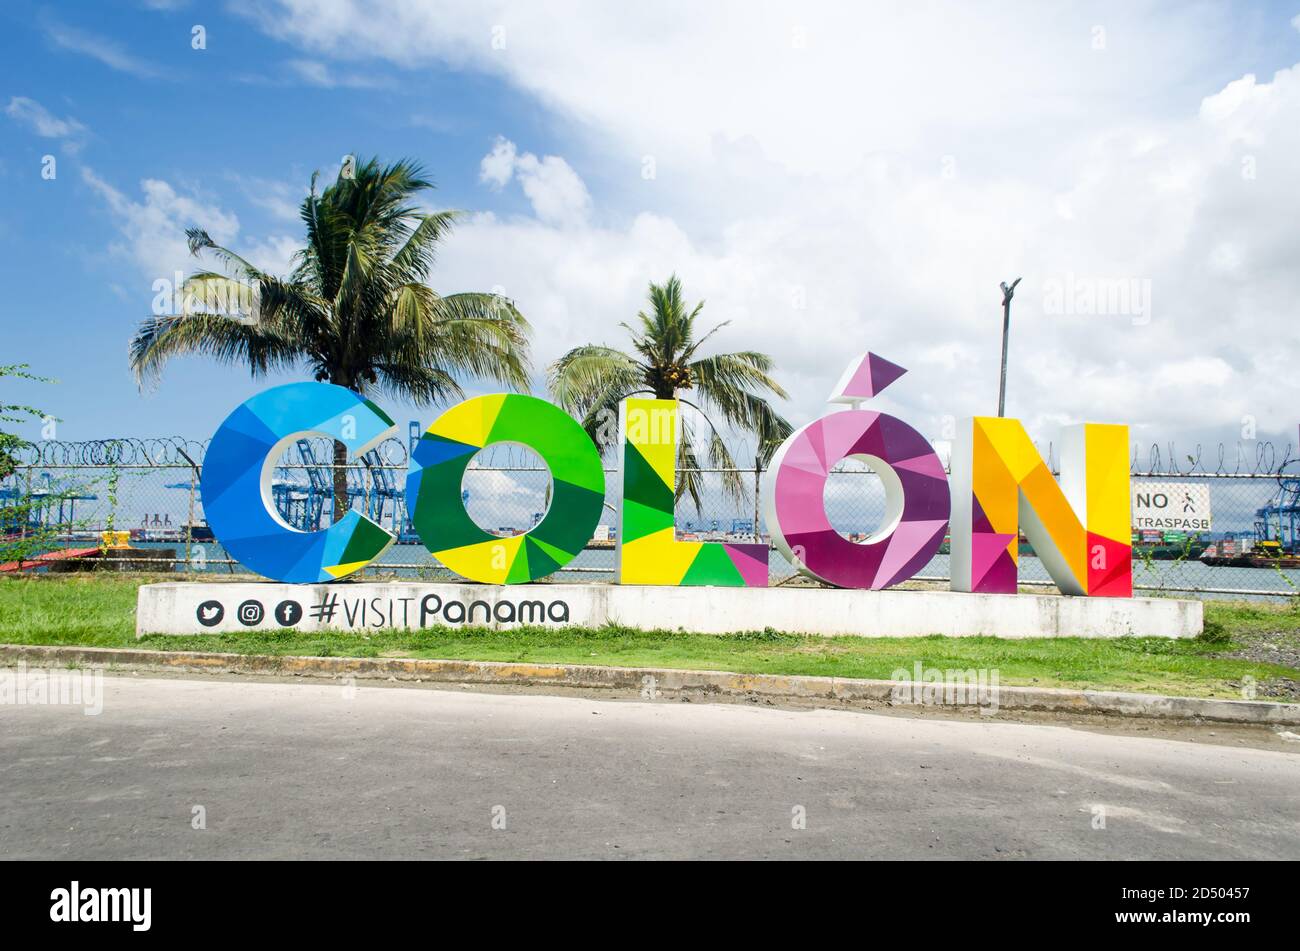 Un signe coloré accueille les gens à la Port de navires de croisière et de la Zone Franche à Colon, sur la côte Caraïbe du Panama. Banque D'Images